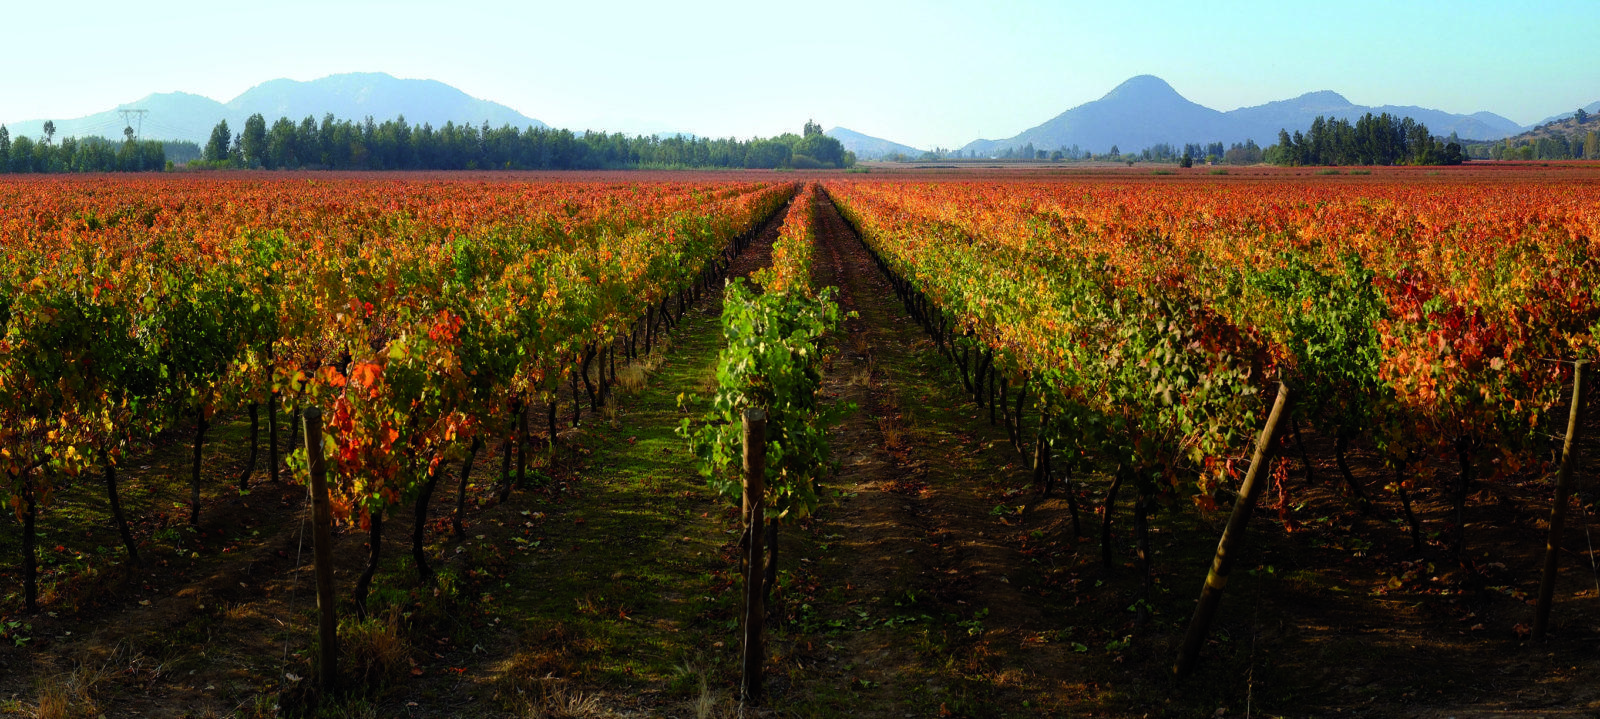 Carmenere szőlőterület Chilében, a chilei borvidékeken